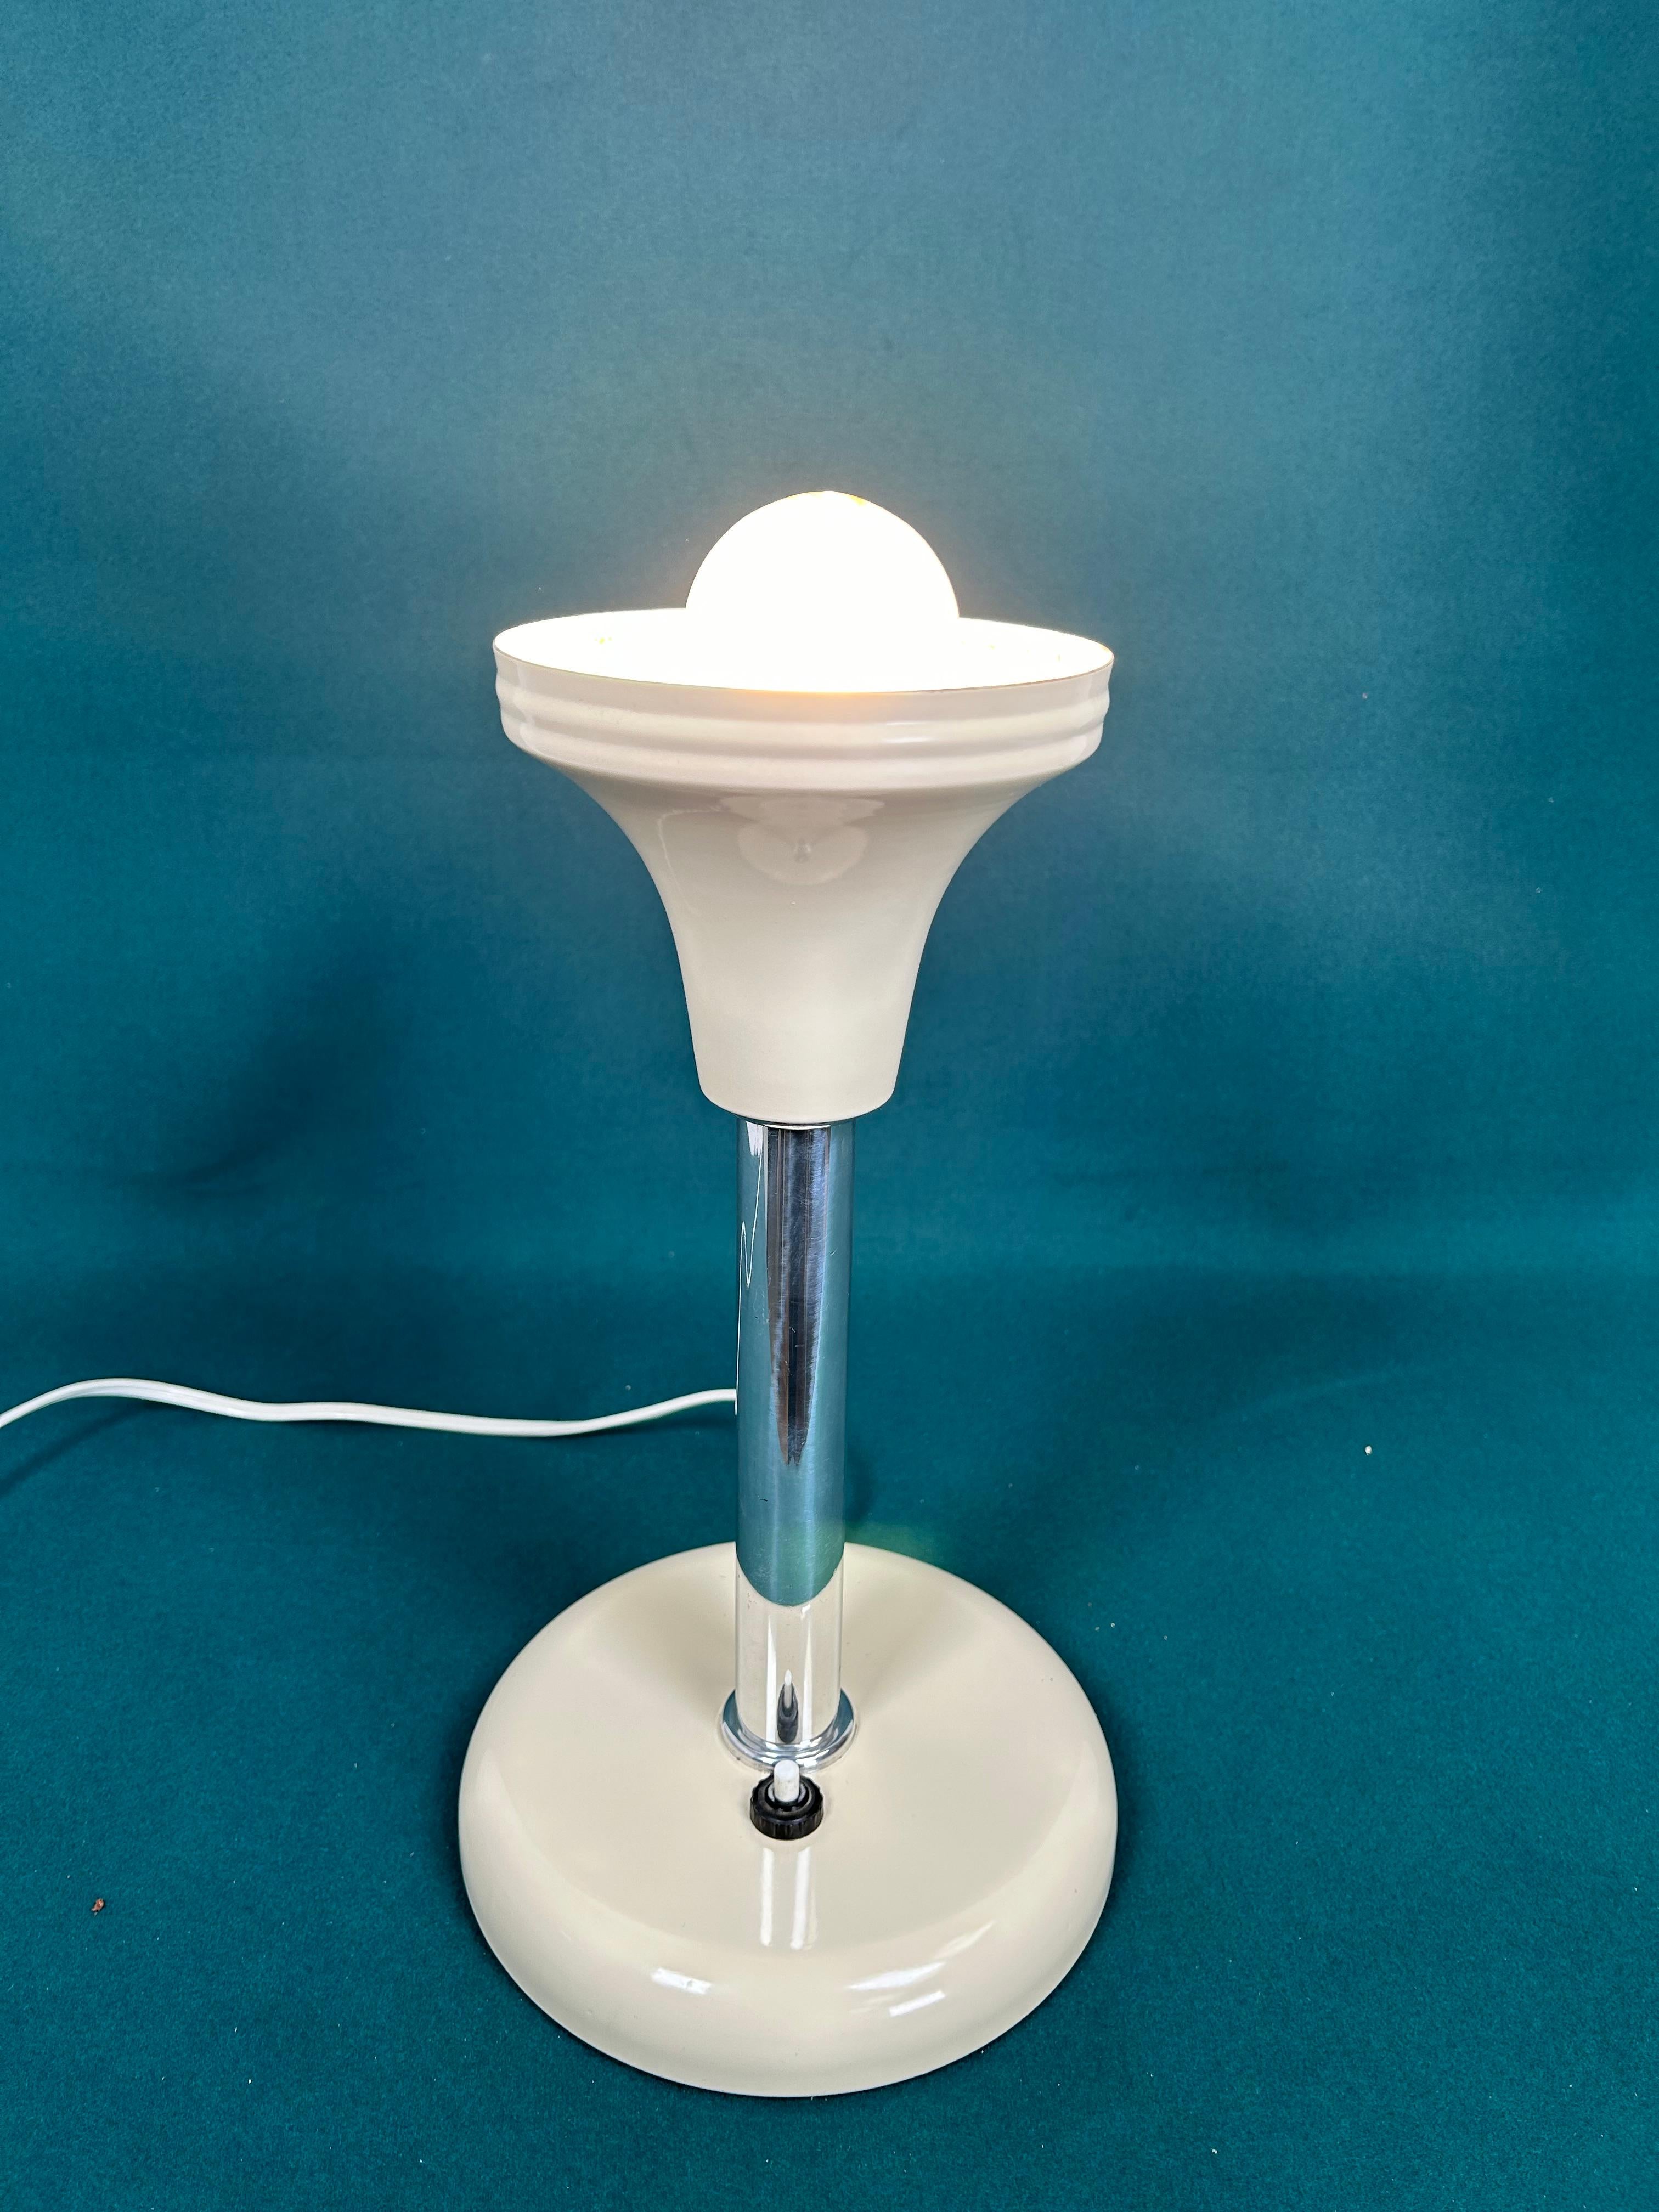 Mid-20th Century Art deco table lamp by Max Schumacher 1934 for Metallwerk Werner Schröder For Sale